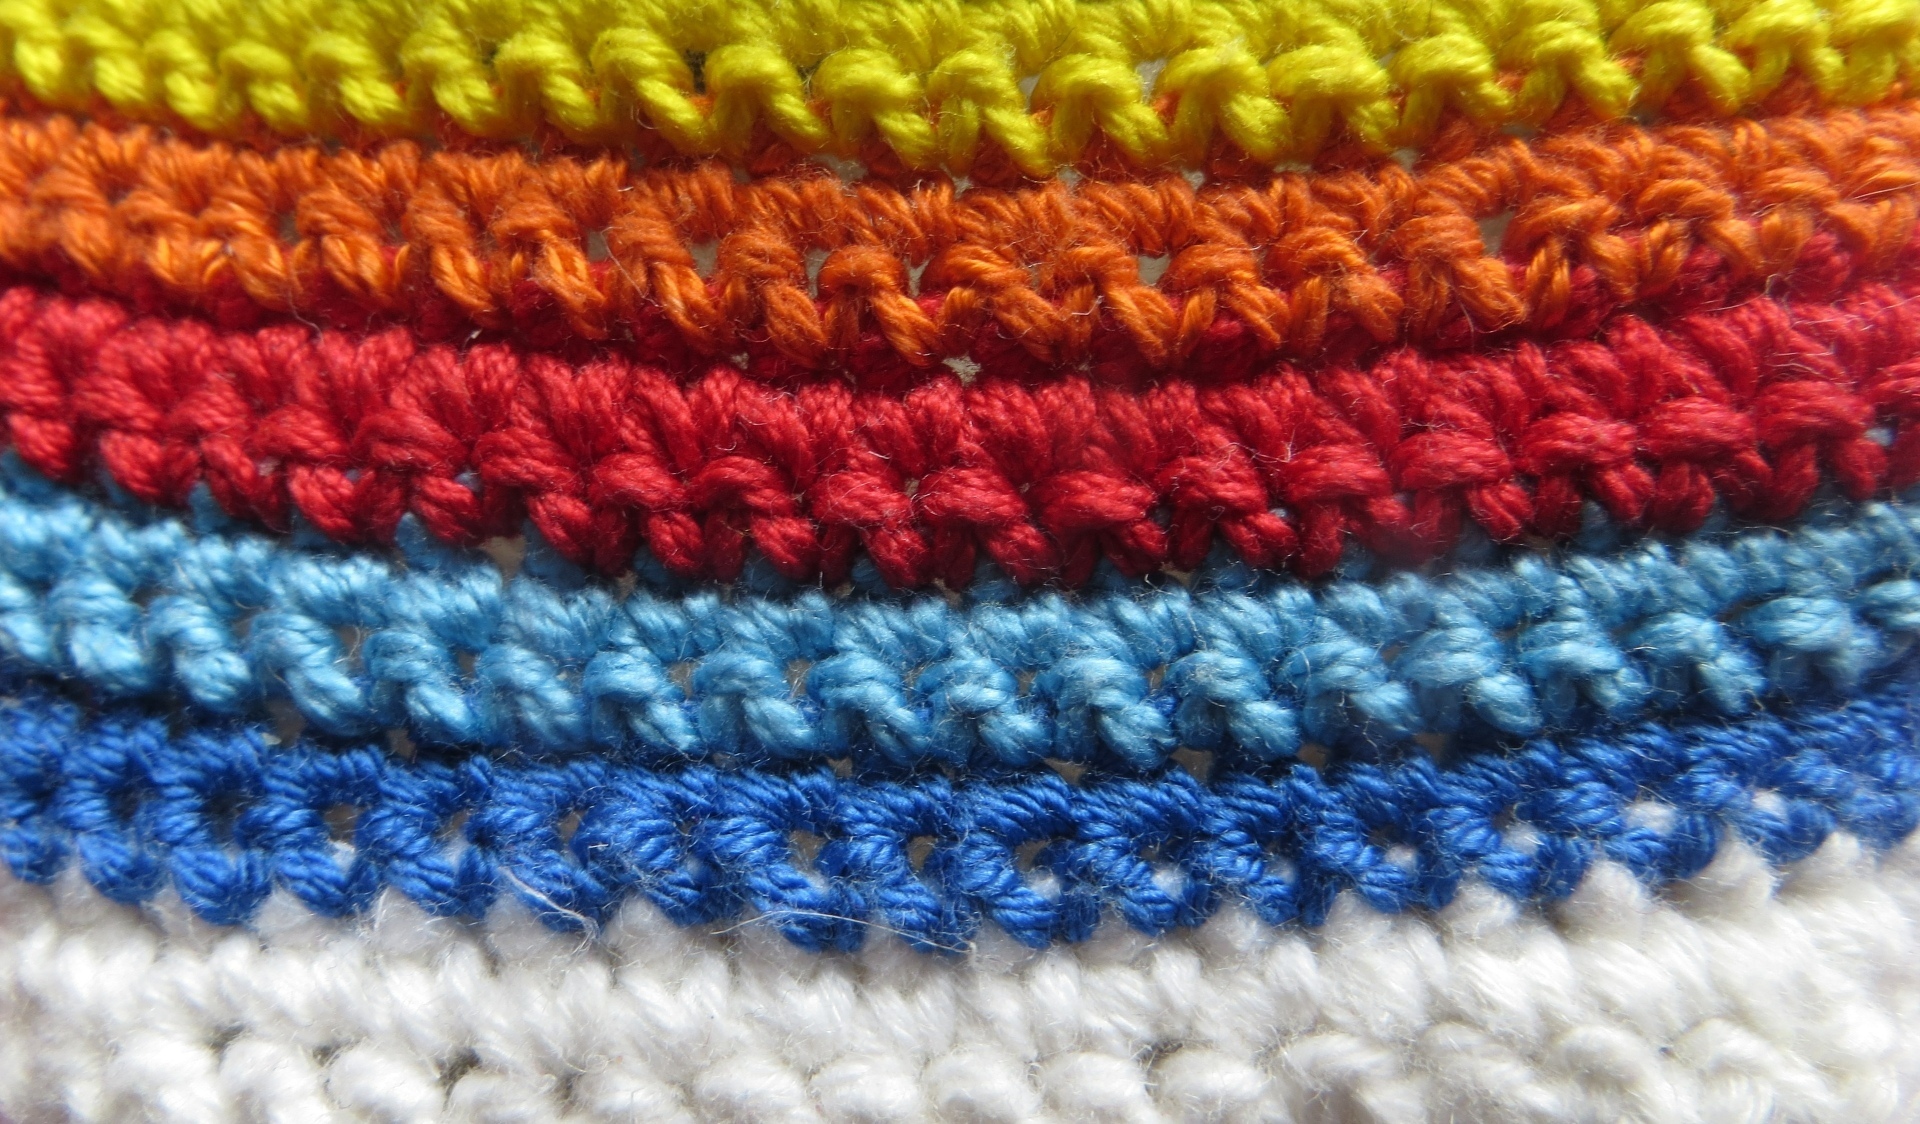 Colourful yarn swatch